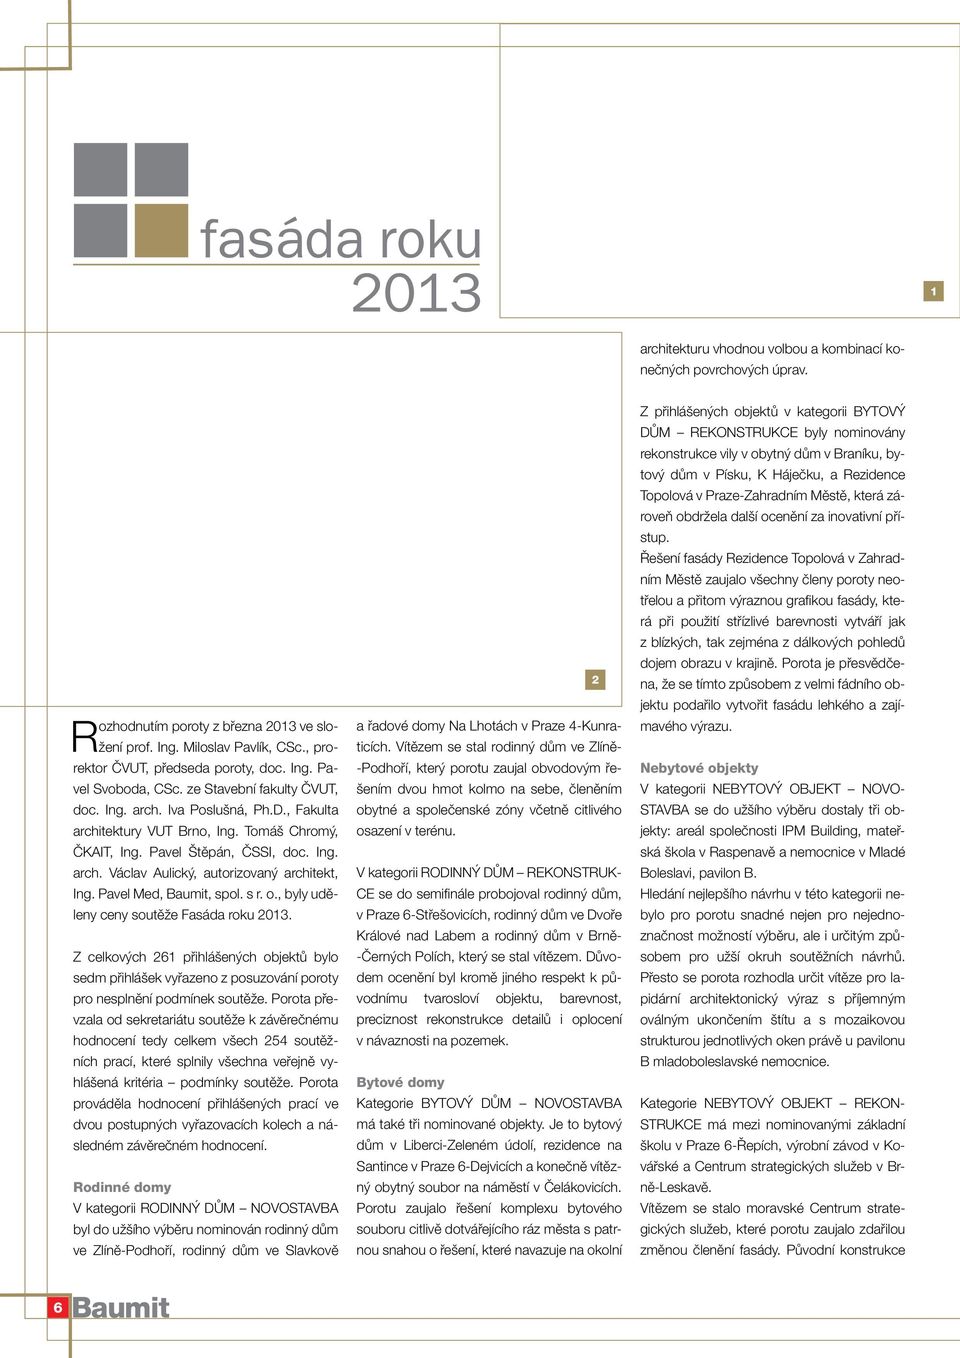 Pavel Med, Baumit, spol. s r. o., byly uděleny ceny soutěže Fasáda roku 2013. Z celkových 261 přihlášených objektů bylo sedm přihlášek vyřazeno z posuzování poroty pro nesplnění podmínek soutěže.